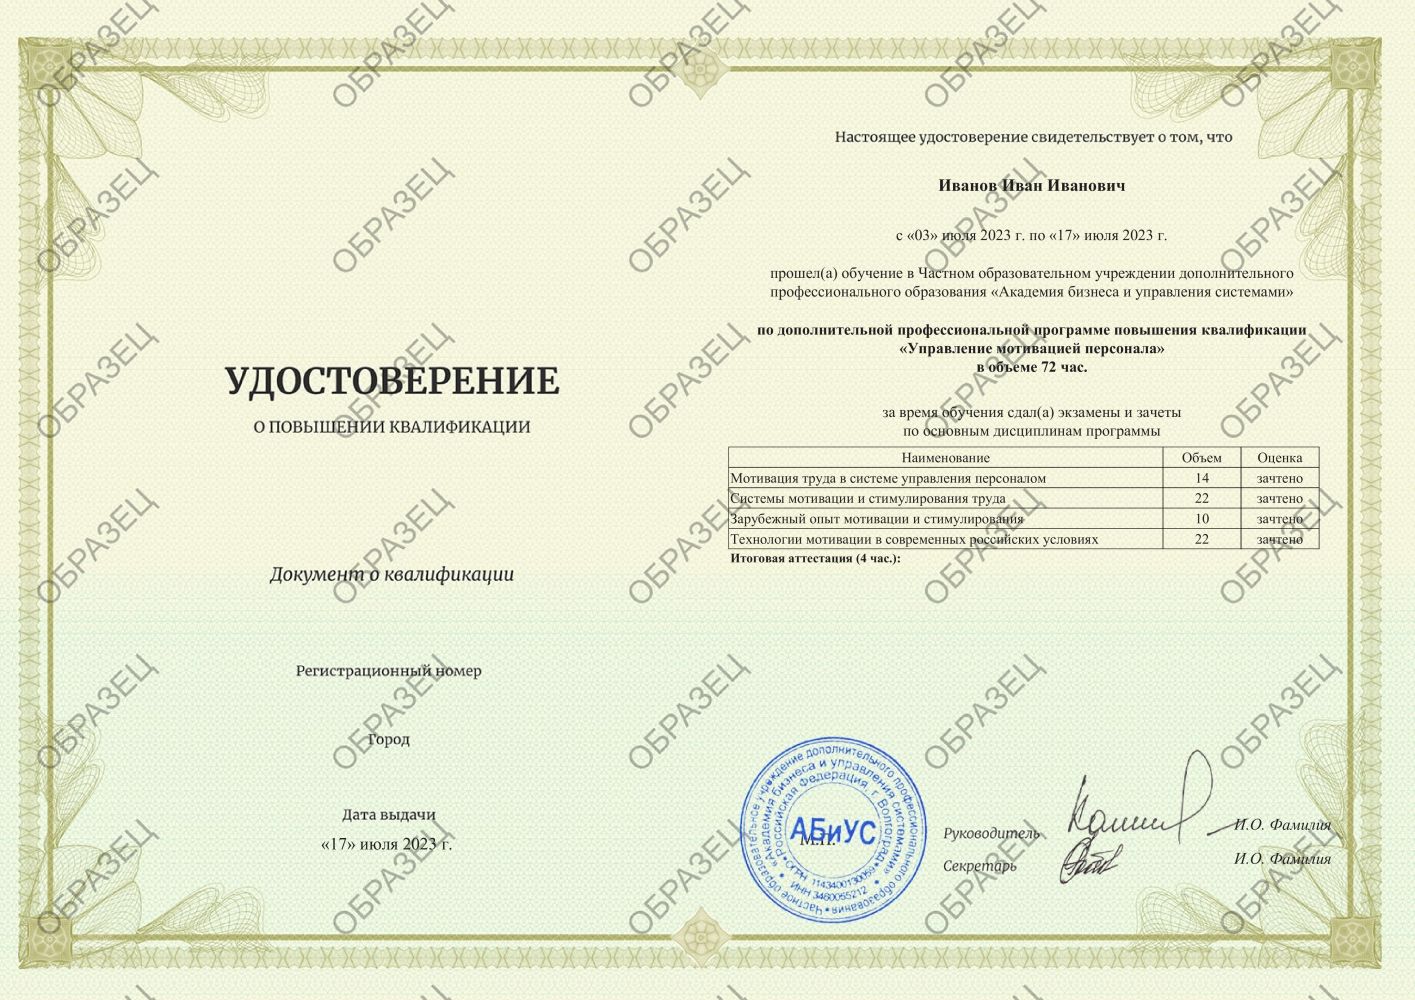 Удостоверение Управление мотивацией персонала 72 часа 6313 руб.